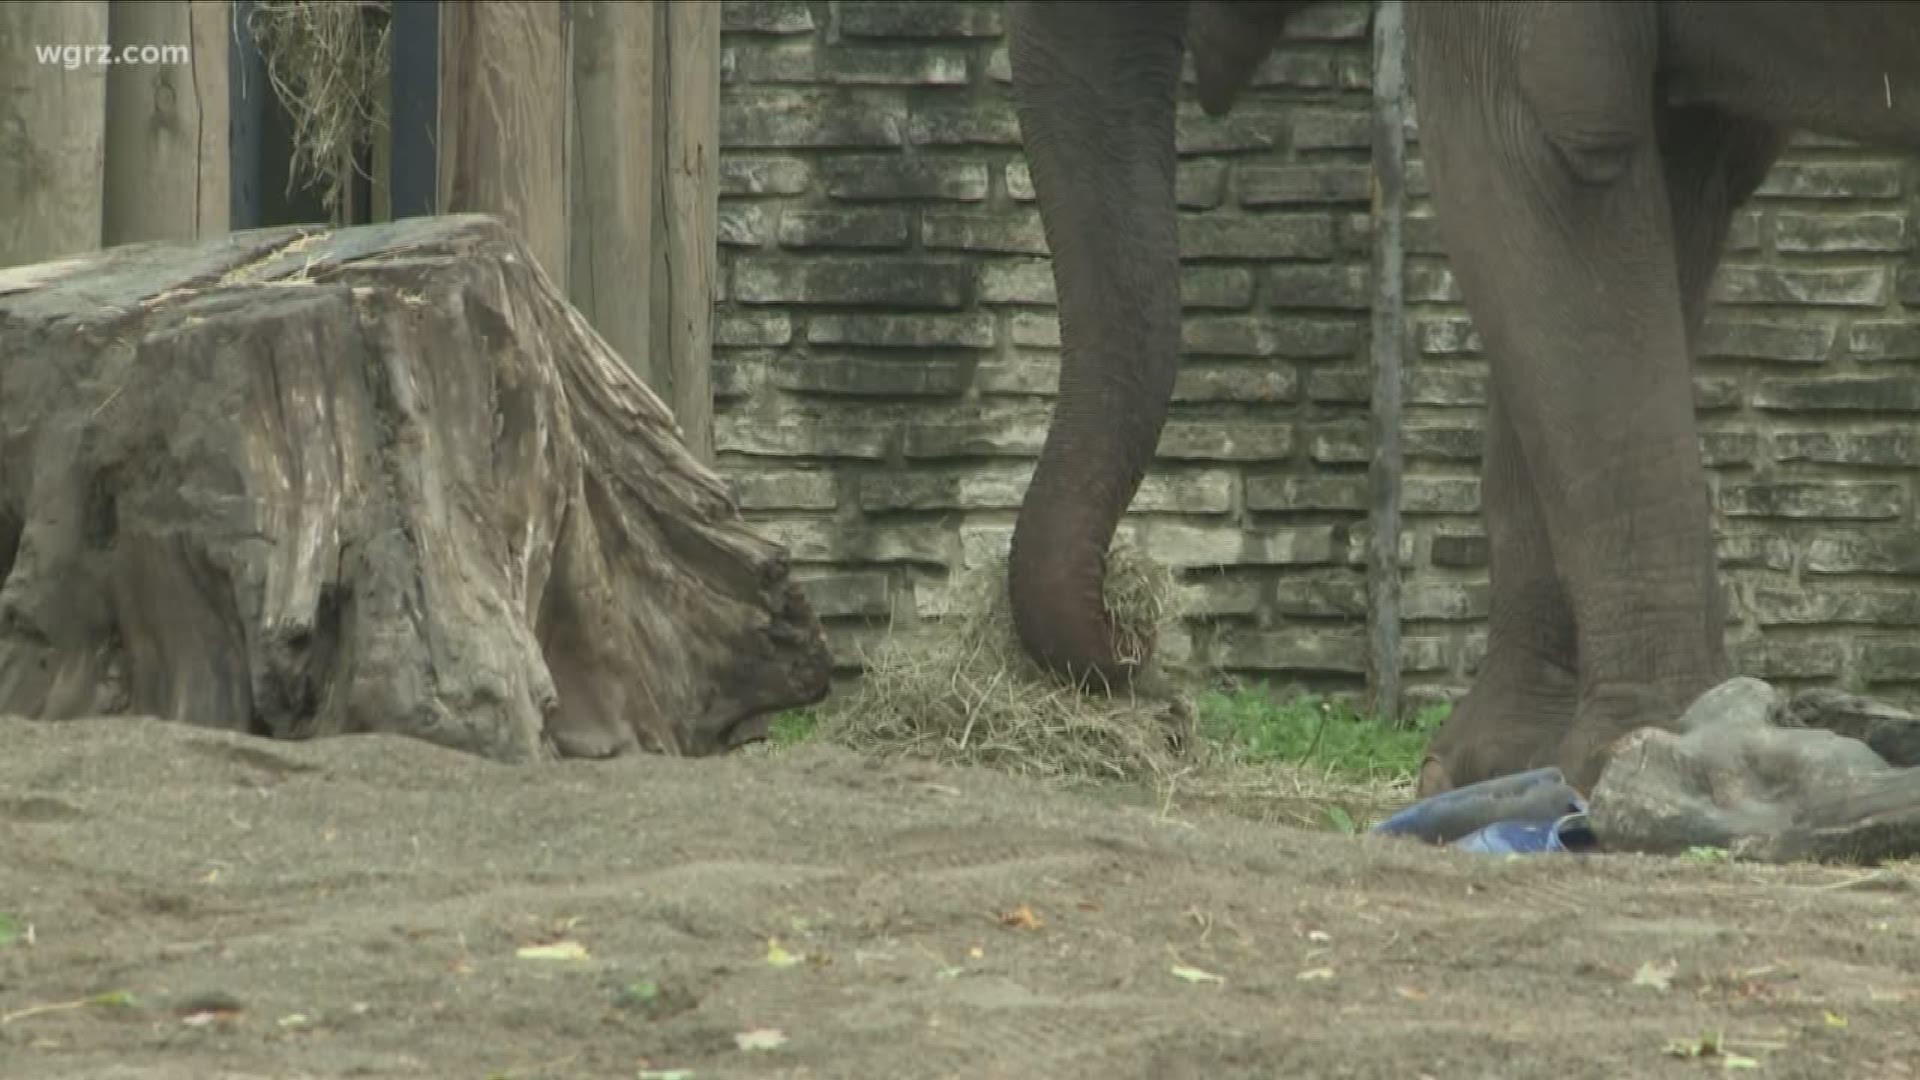 Buffalo Zoo says goodbye to its elephants